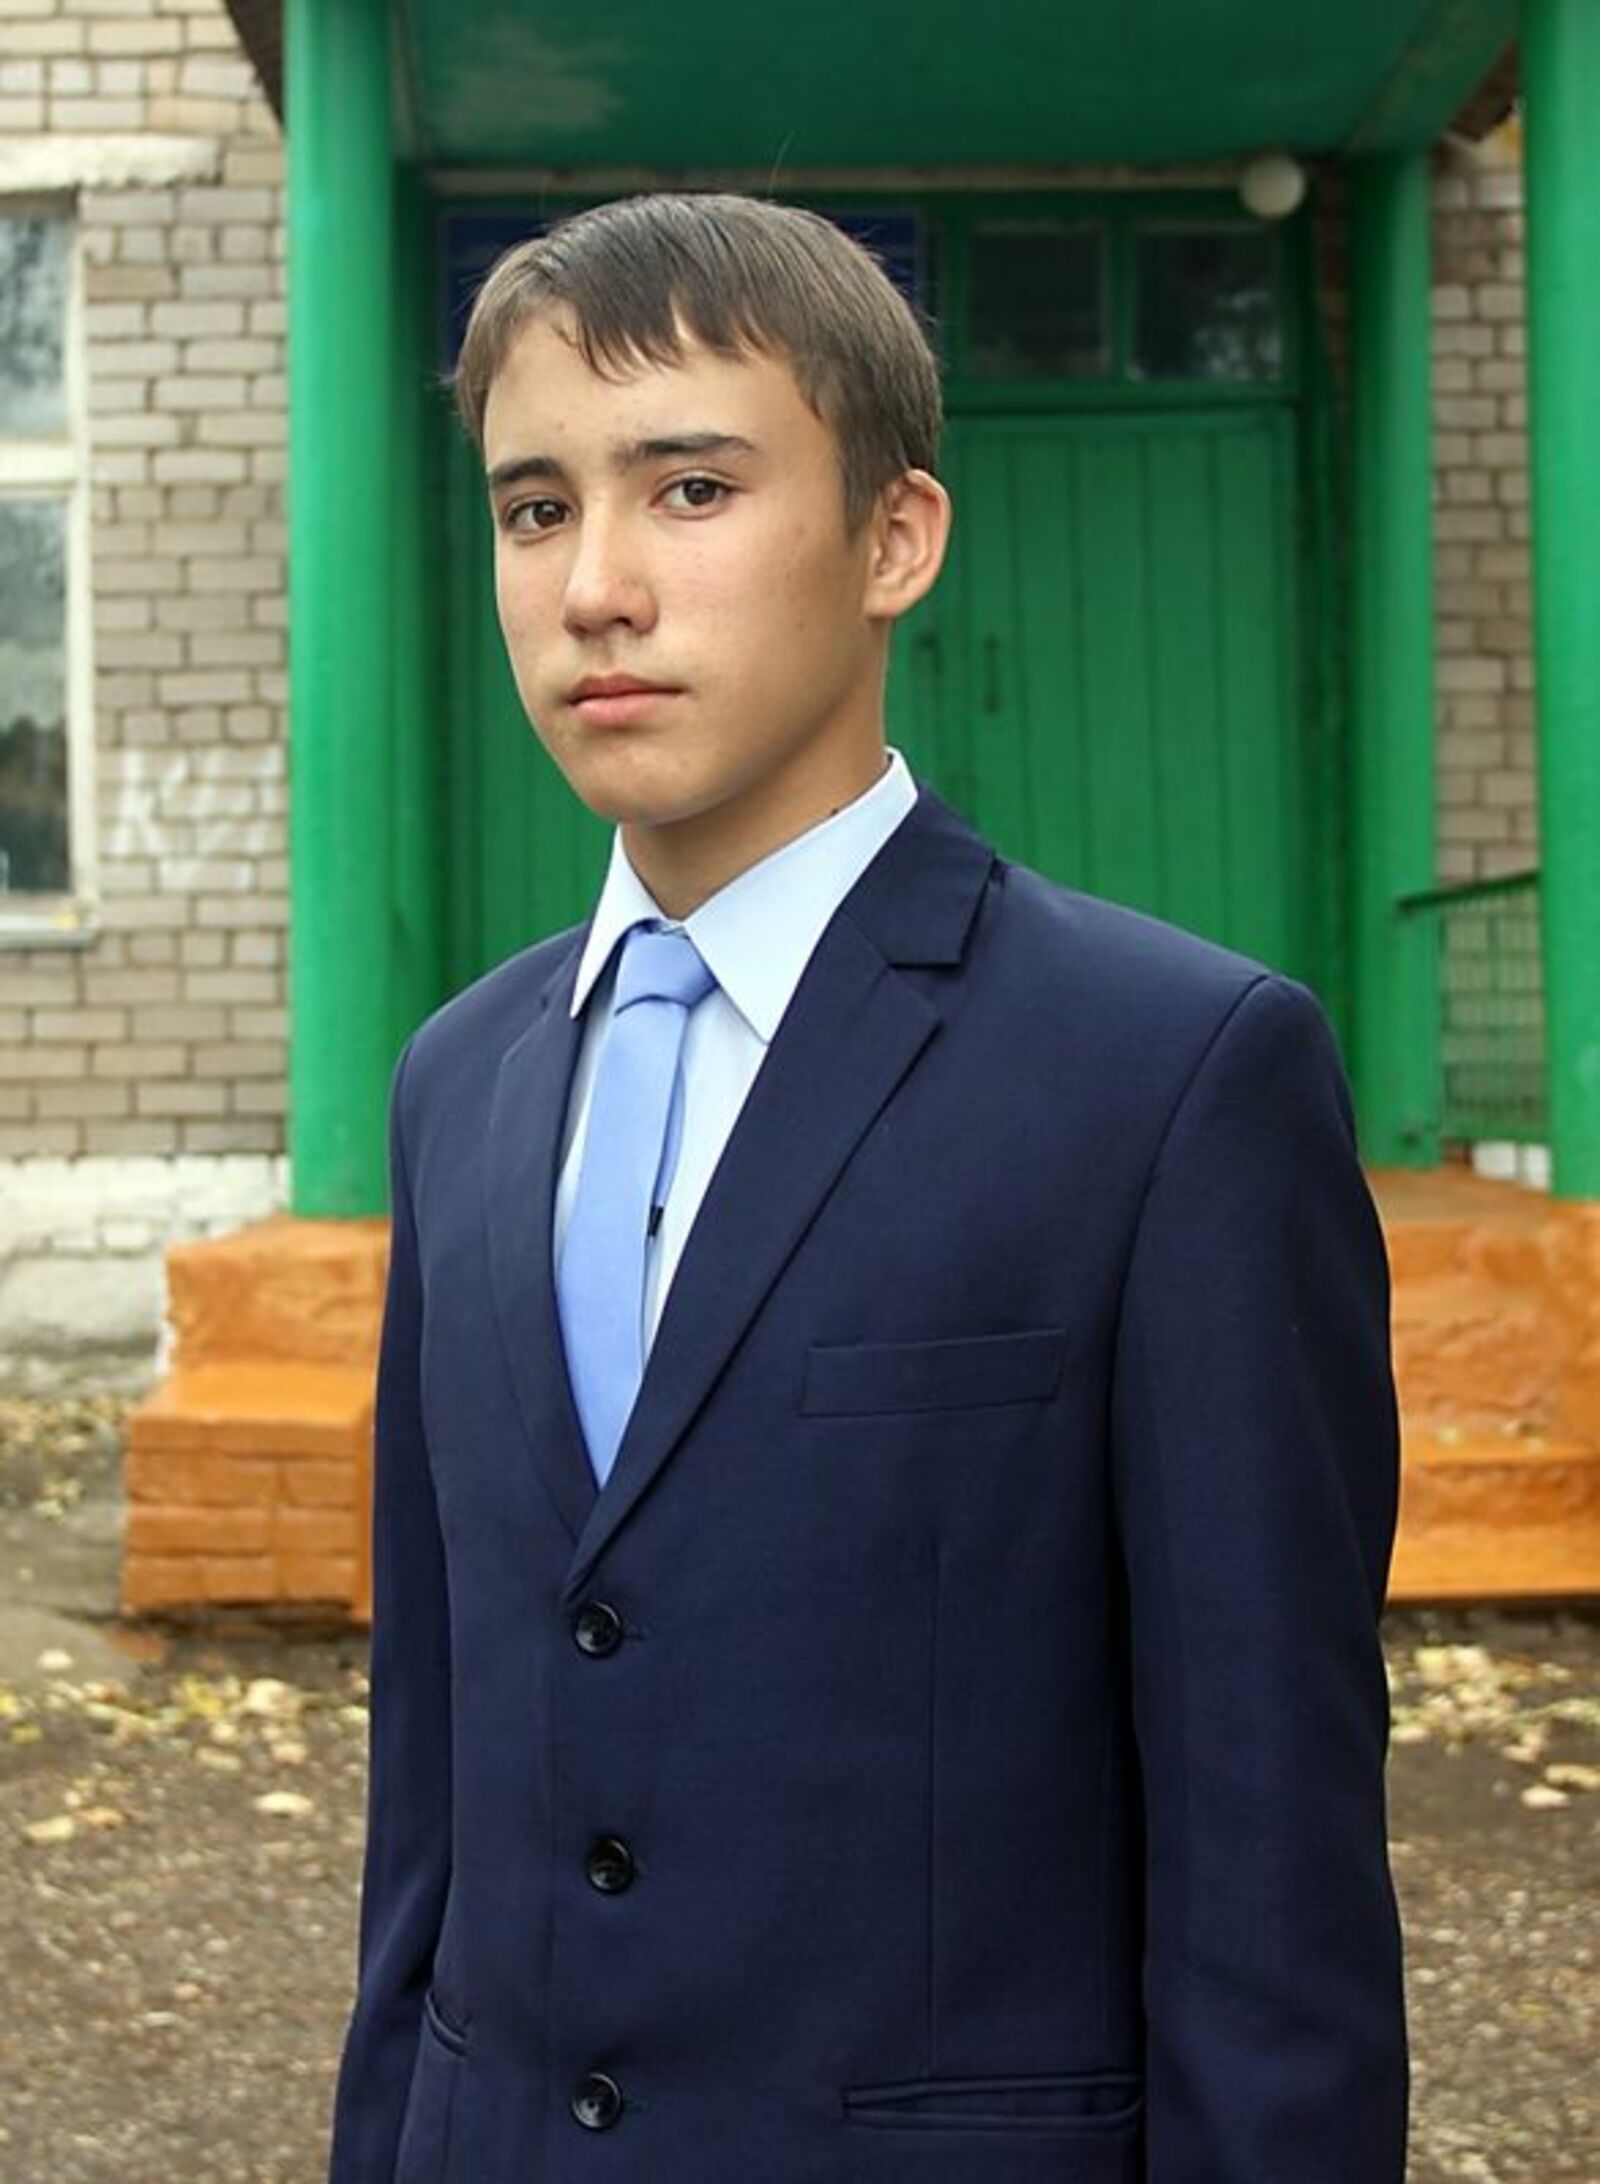 Даян Атзитаров – целеустремлённый, активный и позитивный юноша.